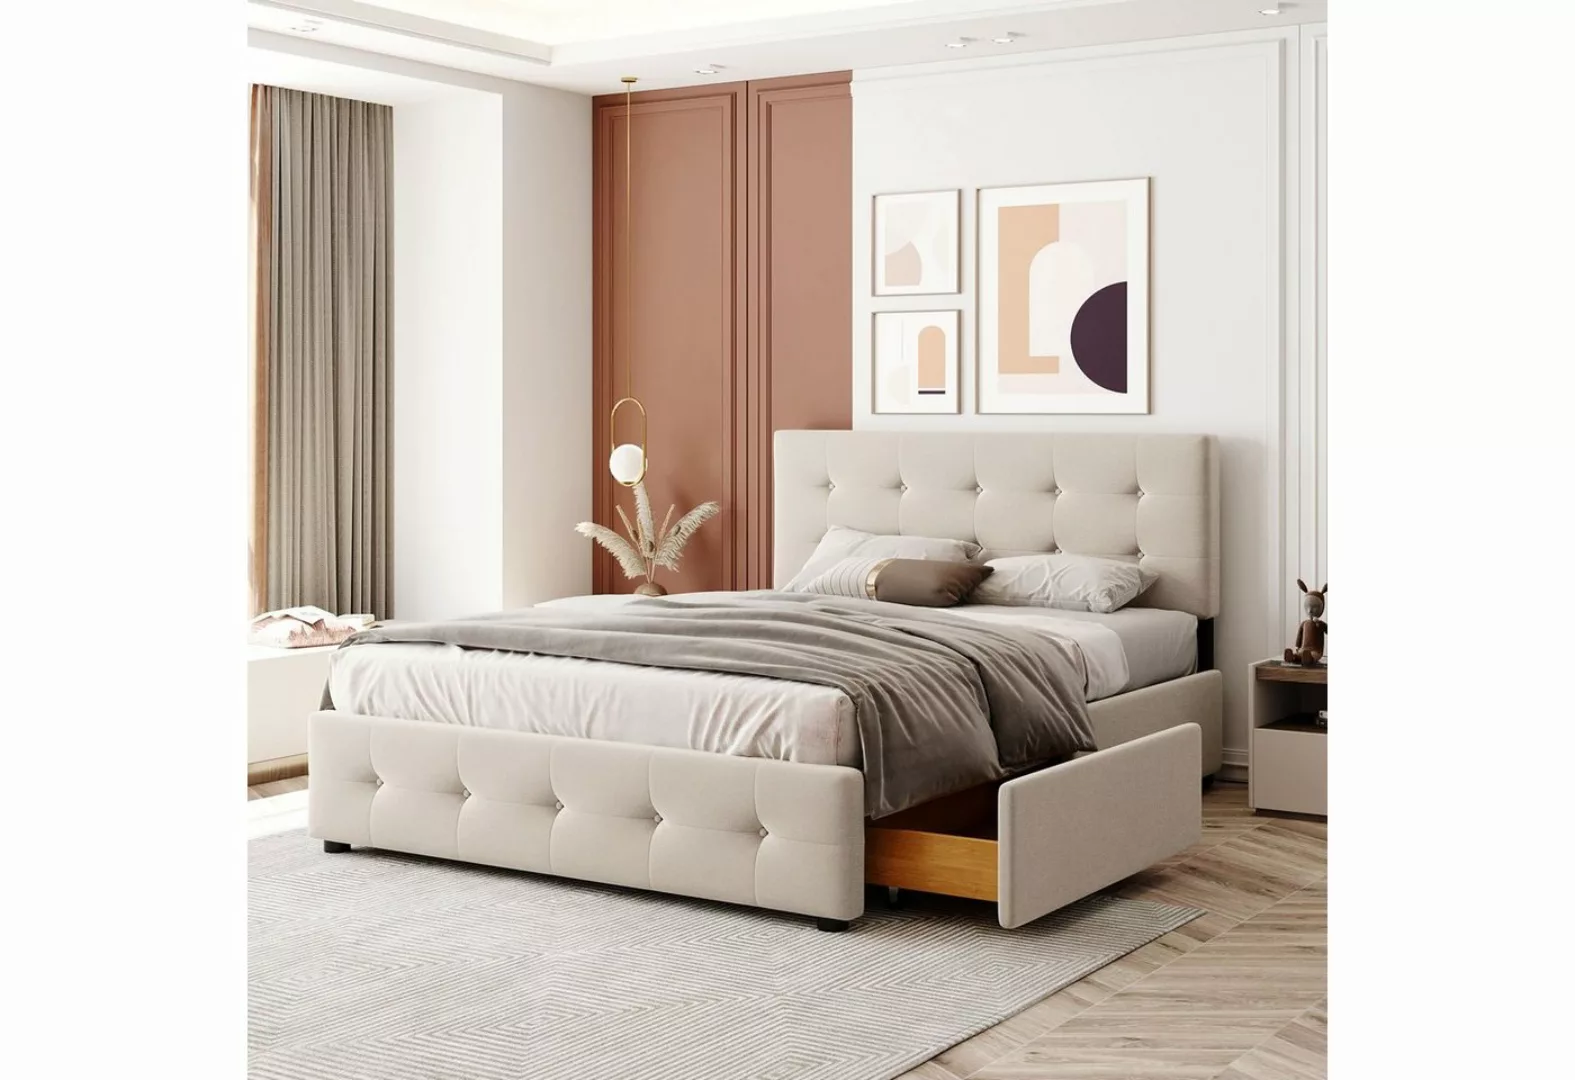 Fangqi Polsterbett 140*200 cm großes gepolstertes Doppelbett mit vier Schub günstig online kaufen